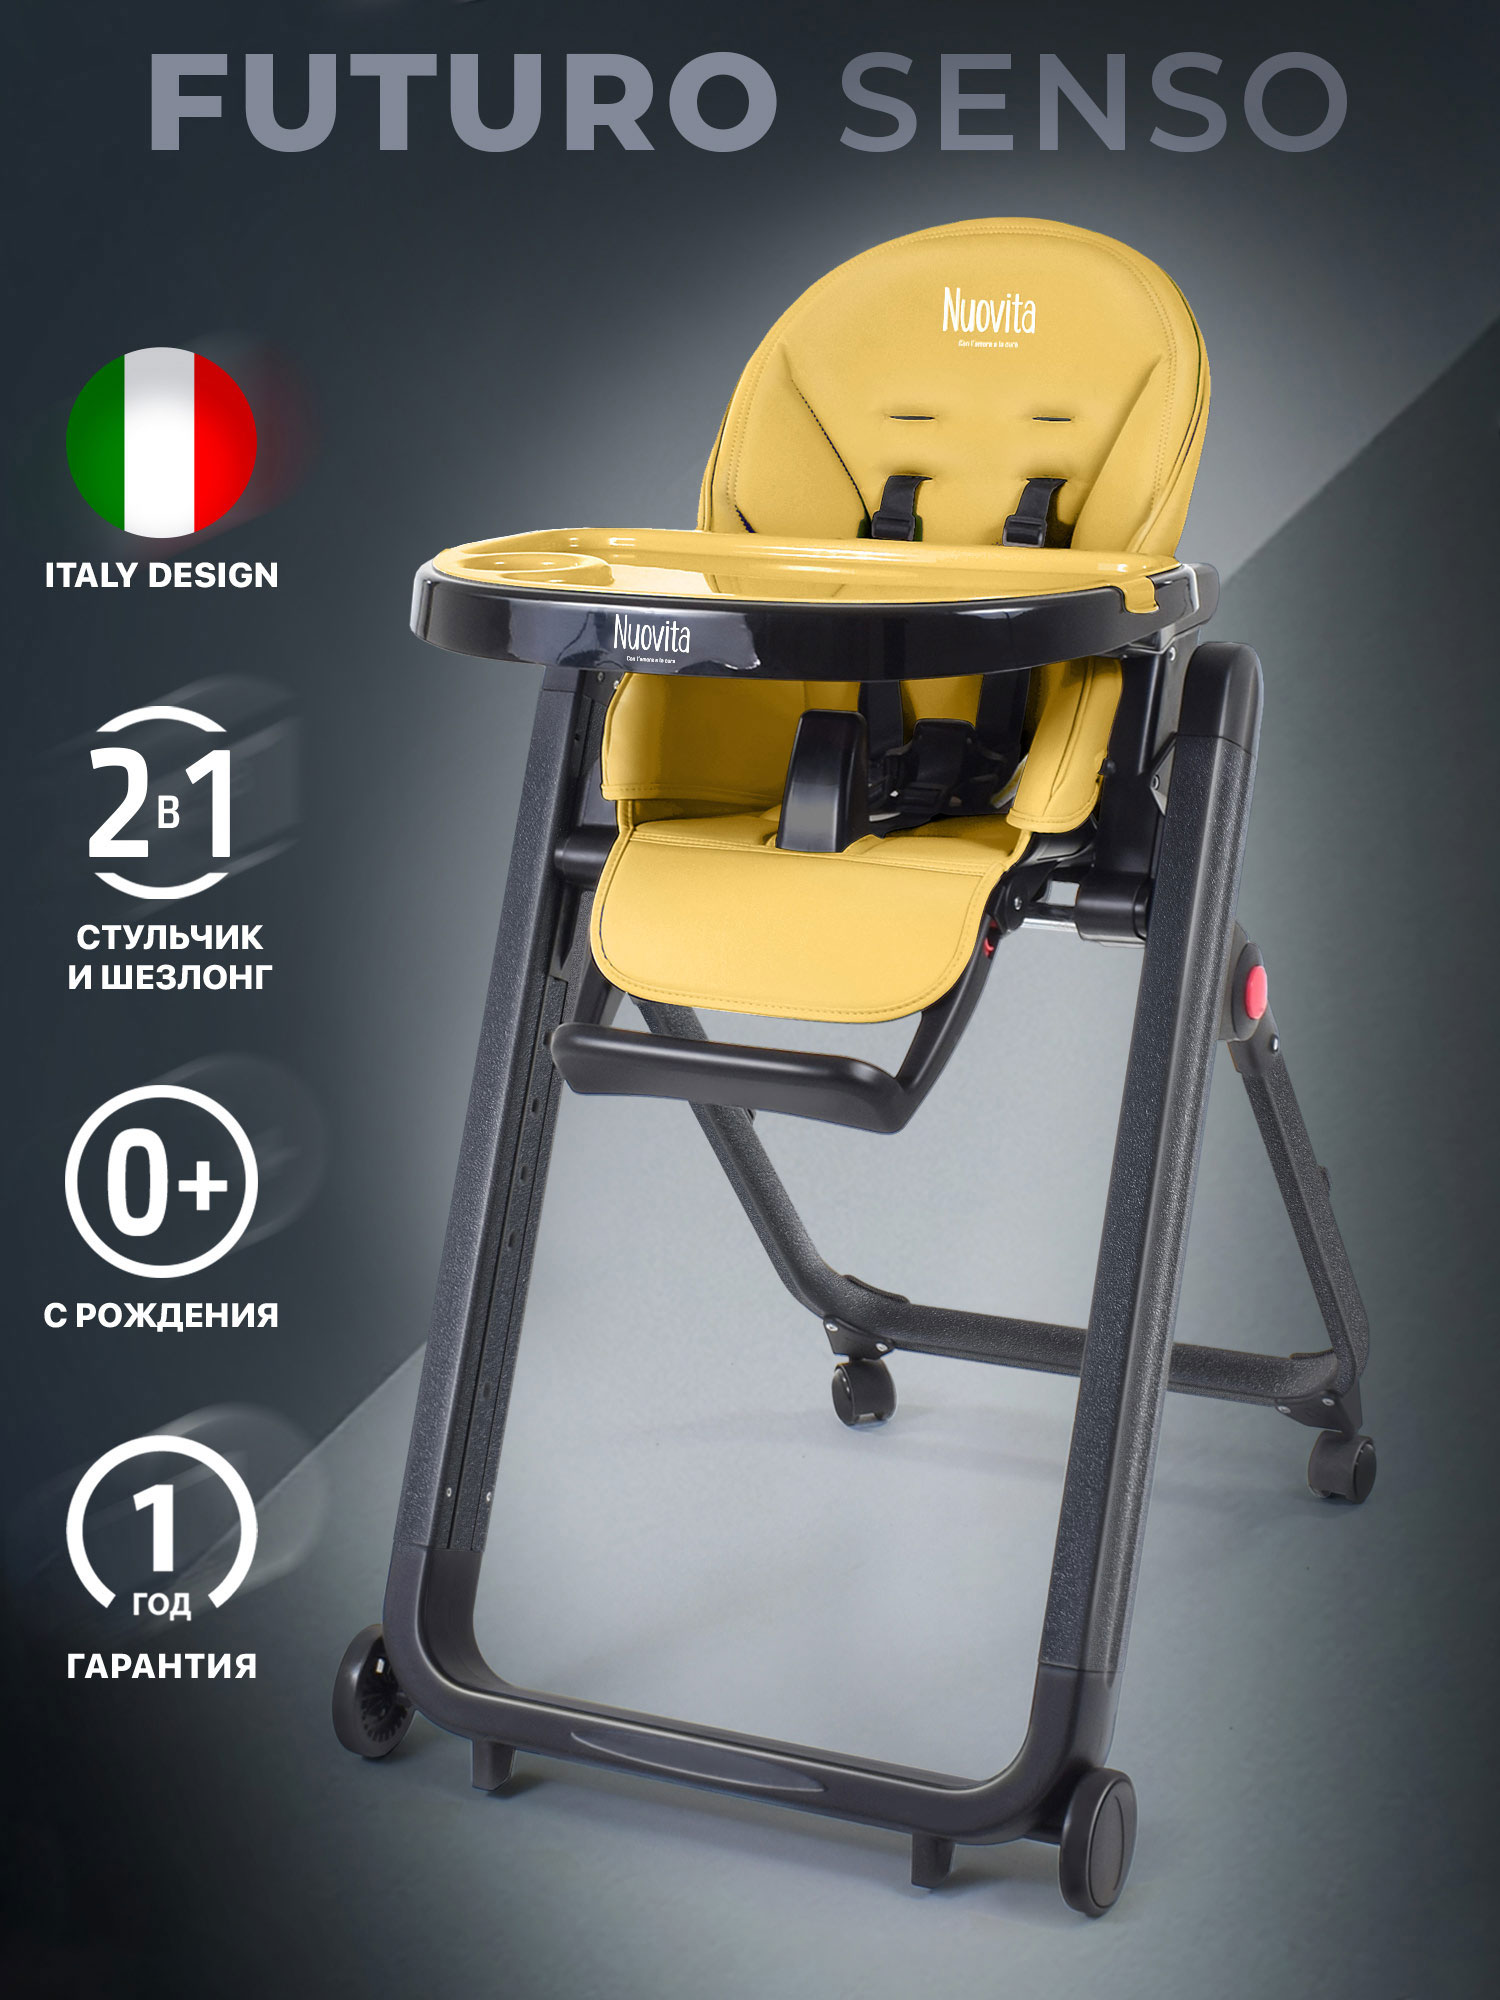 Стульчик для кормления Nuovita Futuro Senso Nero (Giallo/Желтый) стульчик для кормления nuovita futuro nero cosmo giallo желтый космос